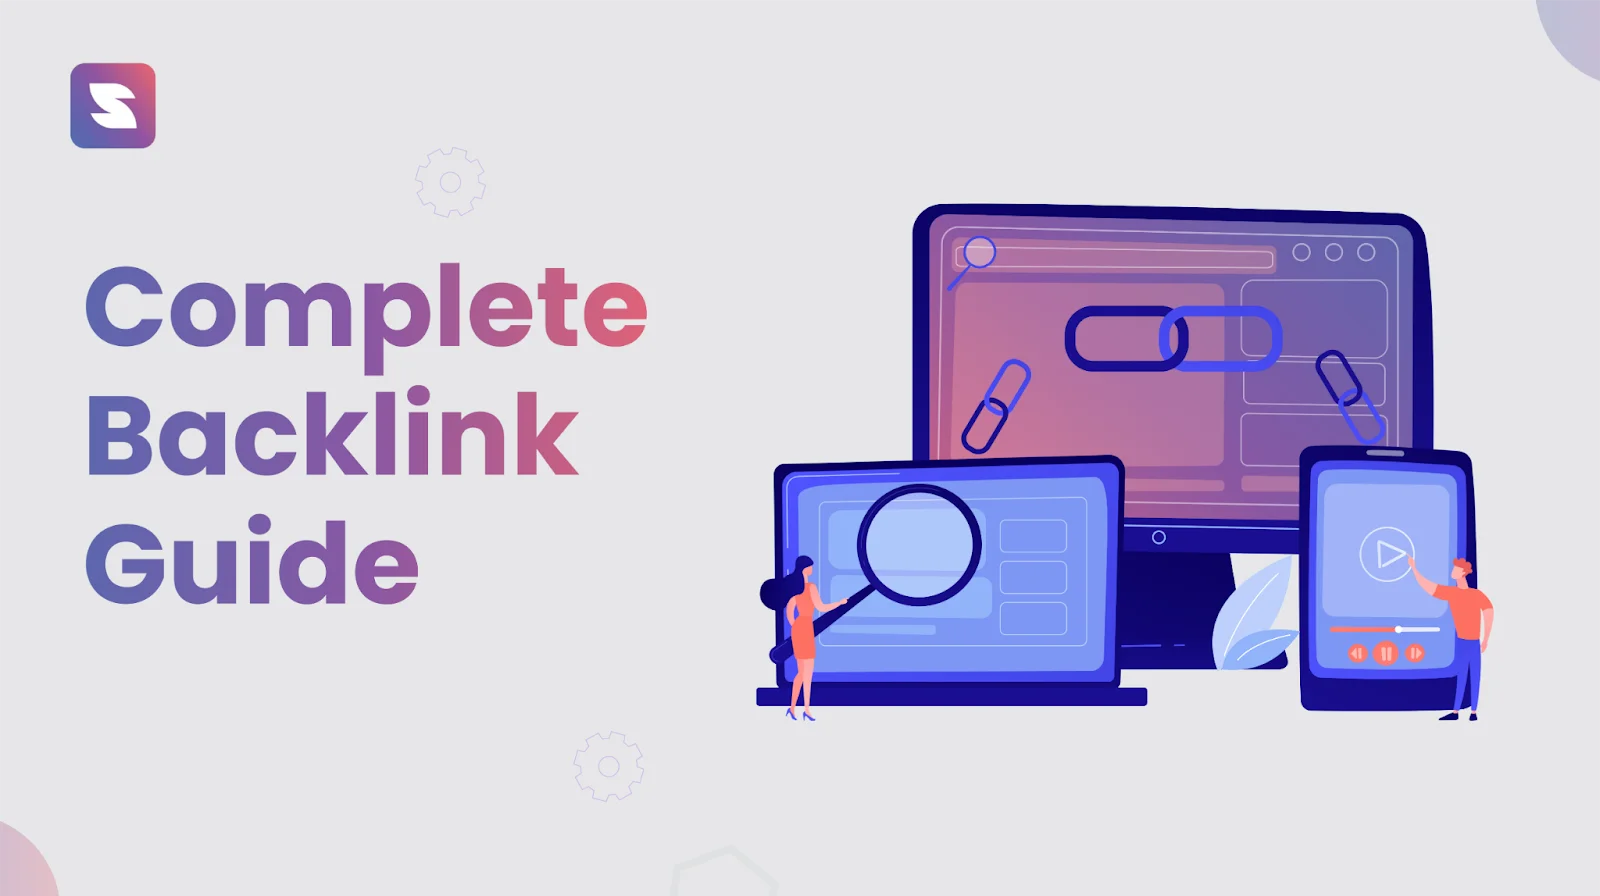 Complete Backlink Guide